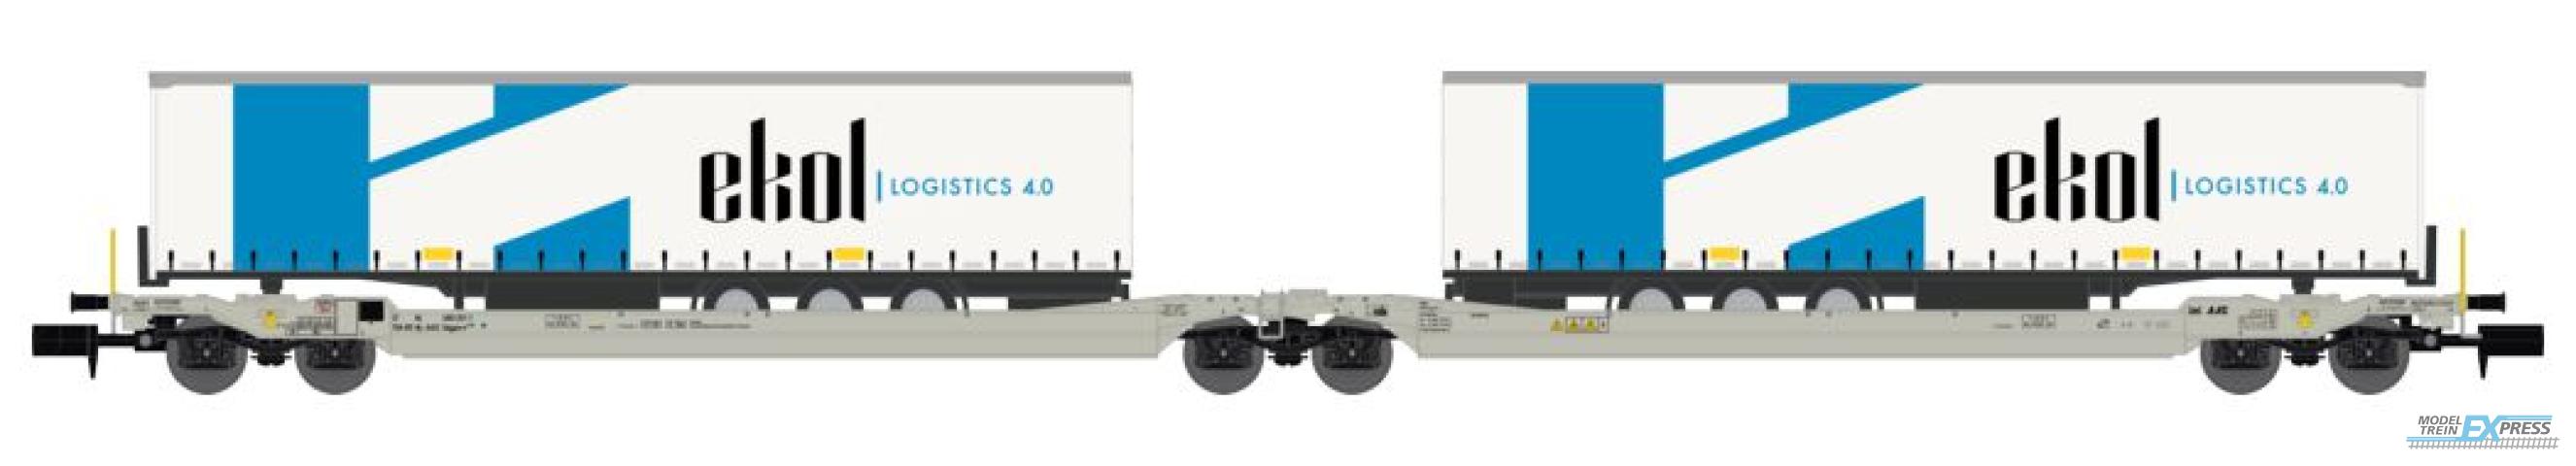 REE models NW-180 Twin car Sdggmrs AAE + 2 trailers EKOL Logistic - Era V-VI